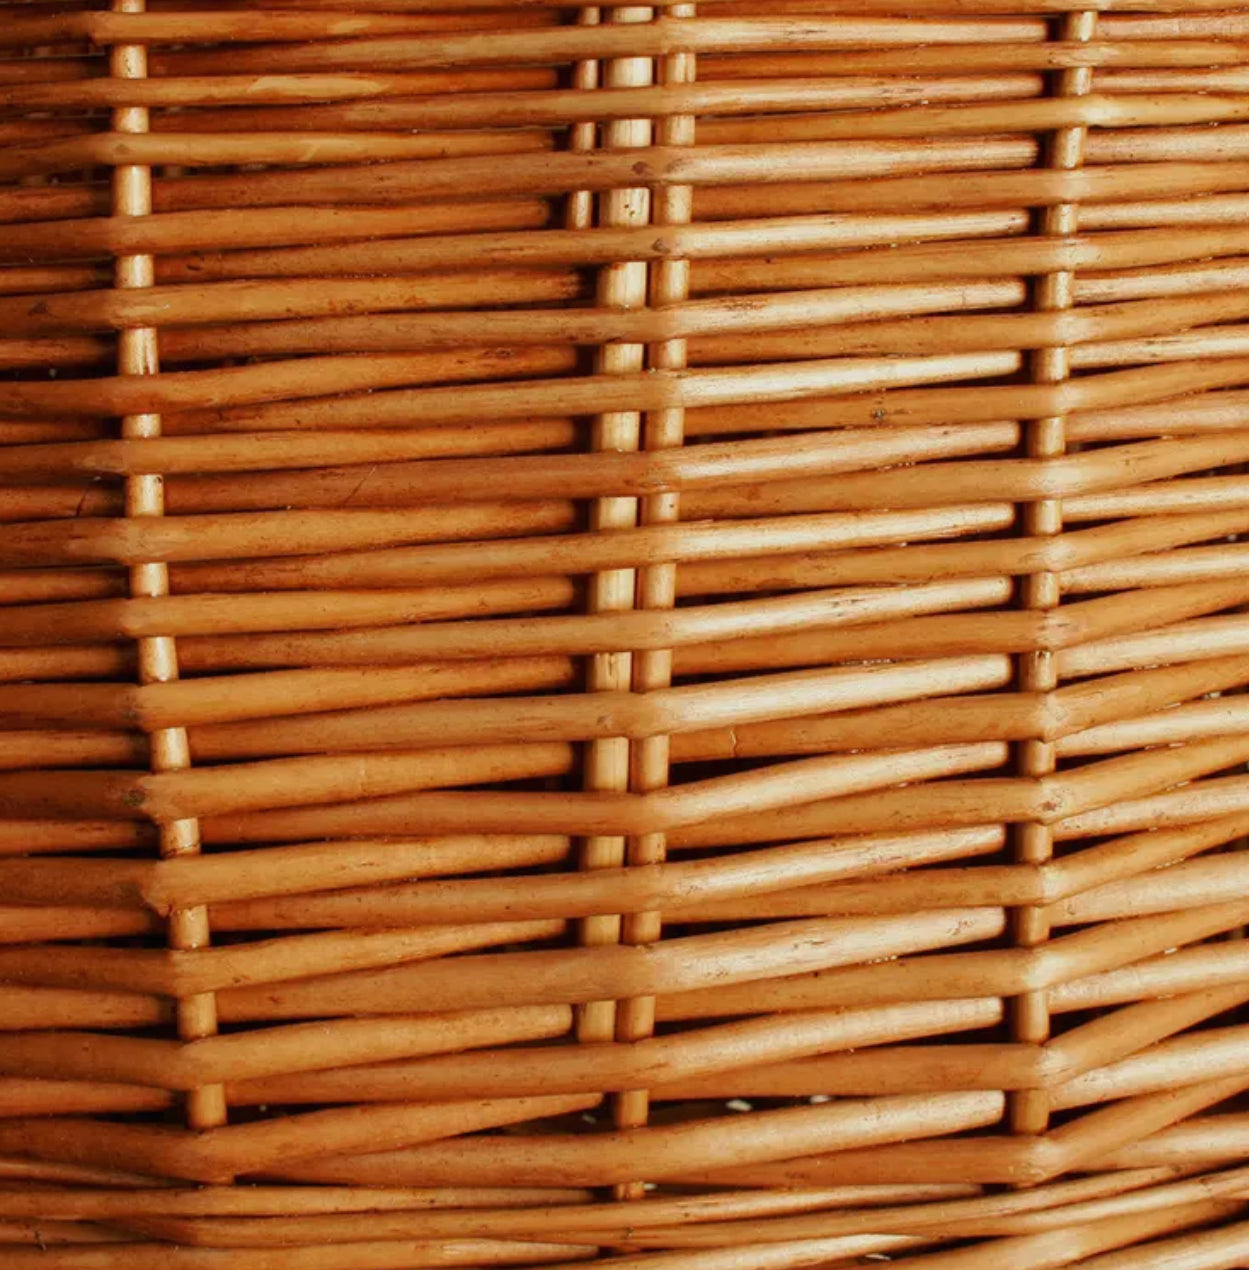 Wicker Wine Basket